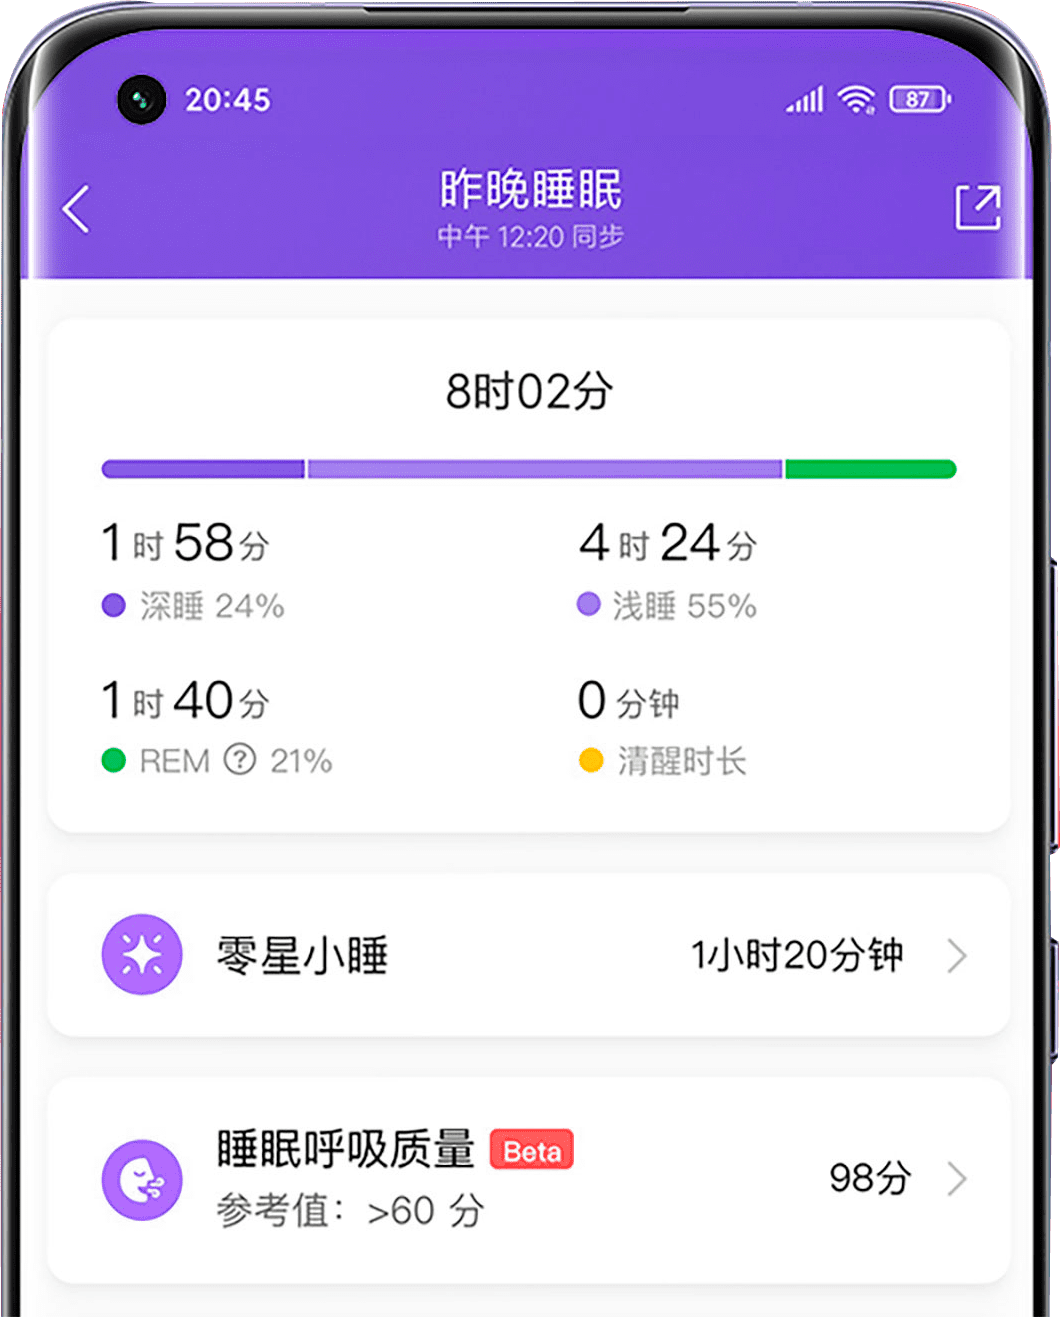 Xiaomi Smart Band 6